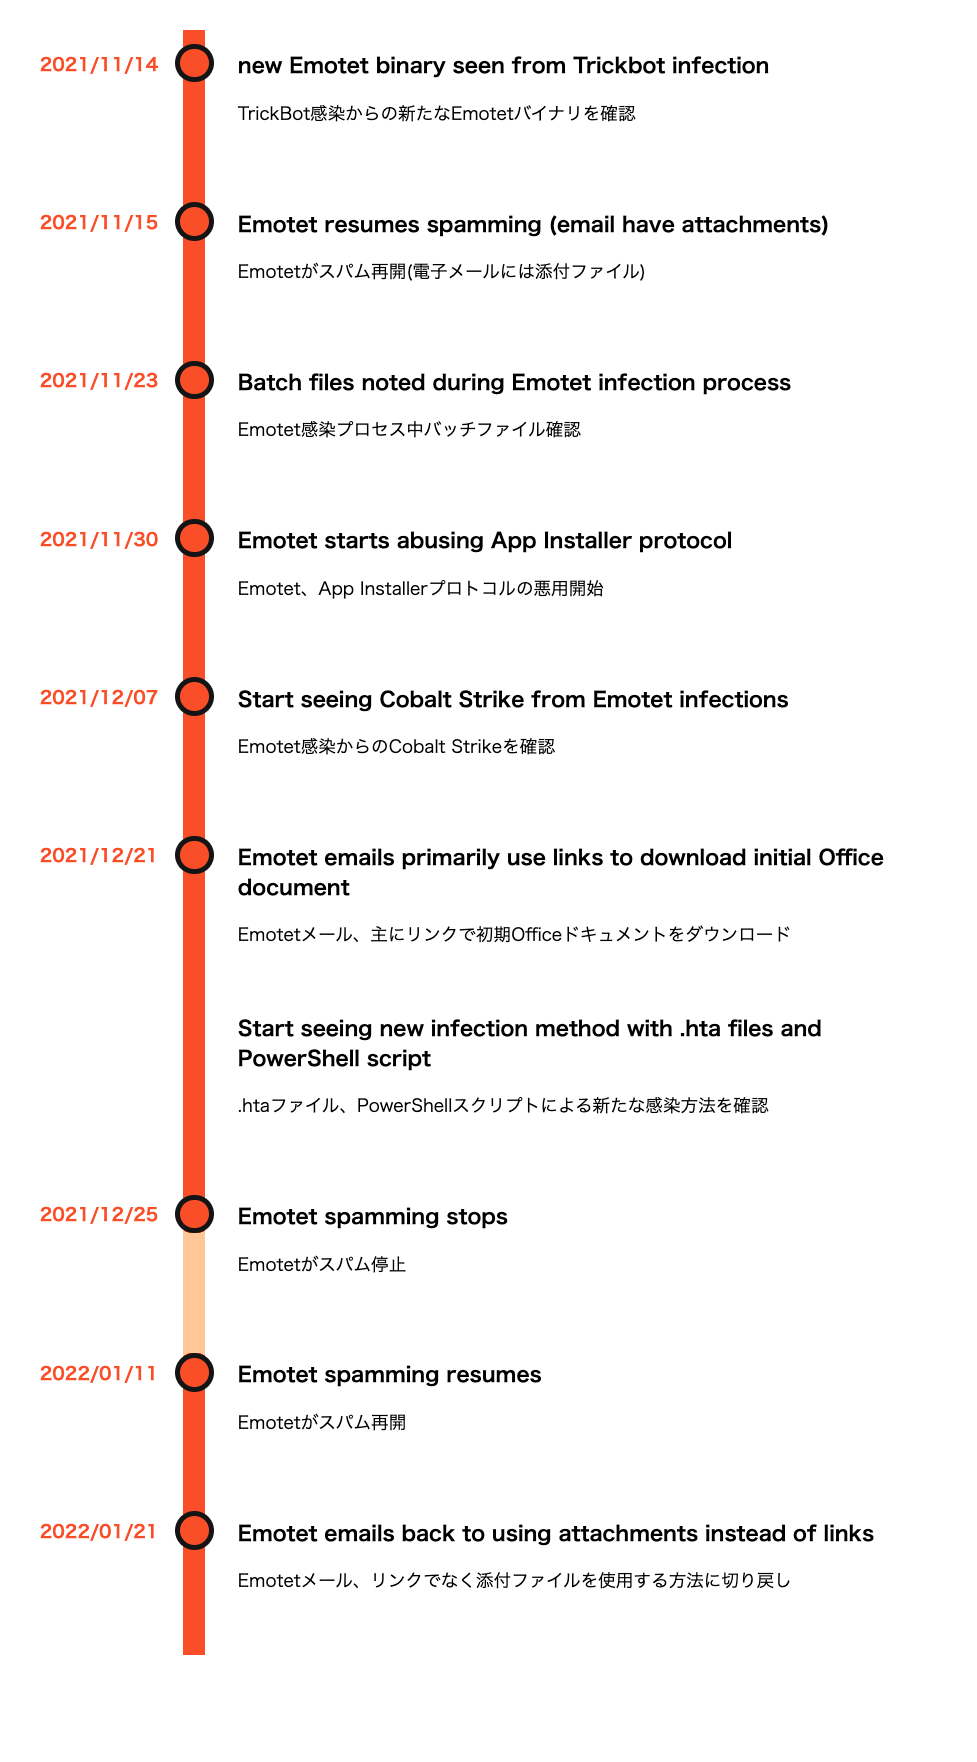 2021年11月から2022年1月にかけてのEmotetオペレーションのタイムライン: 11月14日 Trickbot感染から新しいEmotetバイナリを確認、11月15日 Emotetがスパムを再開(メールに添付ファイルあり)、11月23日 Emotet感染プロセスにバッチファイルを確認、11月30日 Emotetがアプリインストーラープロトコルの悪用開始、12月7日 Emotet感染からのCobaltStrikeが確認されはじめる、12月21日 Emotetメールに主に初期Officeドキュメントをダウンロードするリンクが使用される、12月7日 Emotet感染からのCobaltStrikeが確認されはじめる、12月21日 Emotetメールに主に初期Officeドキュメントをダウンロードするリンクが使用される、.htaファイルおよびPowerShellスクリプトによる新たな感染手法が確認されはじめる、12月25日 Emotetスパムが停止、1月11日 Emotetスパムが再開、1月21日 Emotet電子メールがリンクではなく再び添付を使用しはじめる。